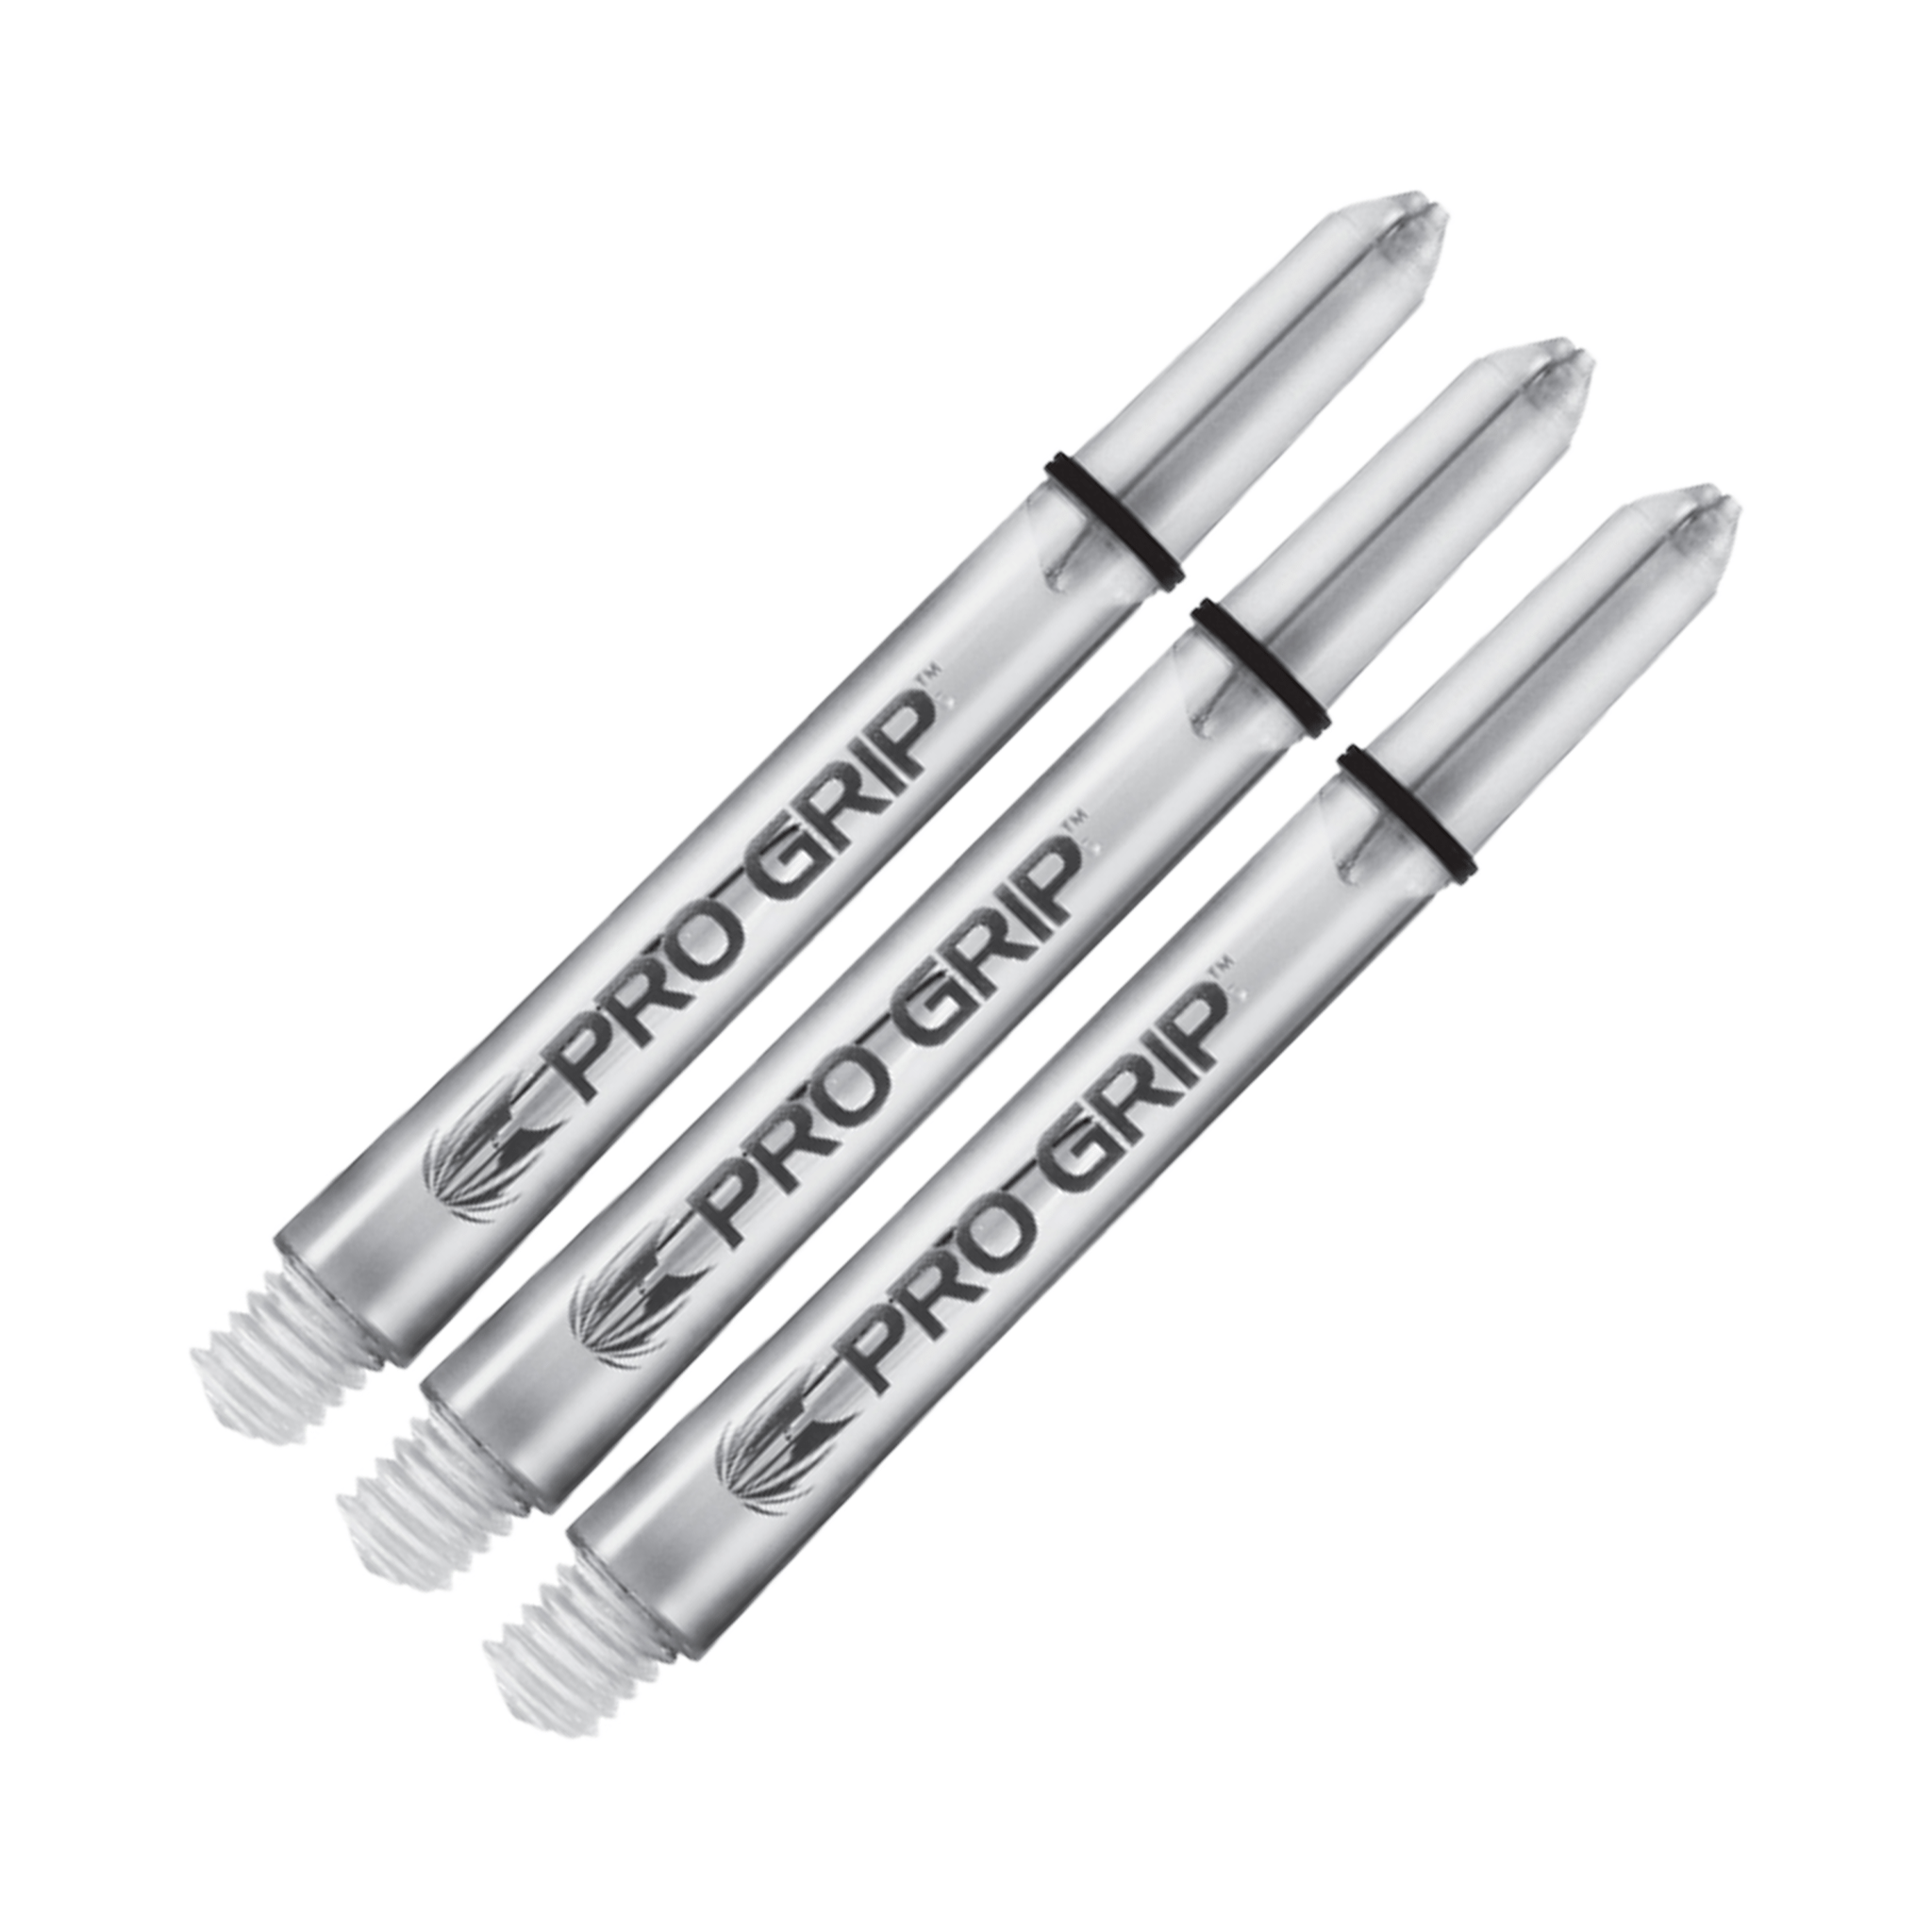 Target Pro Grip Multi Pack - Nylon Dart Shafts (3 Sets) Clear / Medium (48mm) Shafts